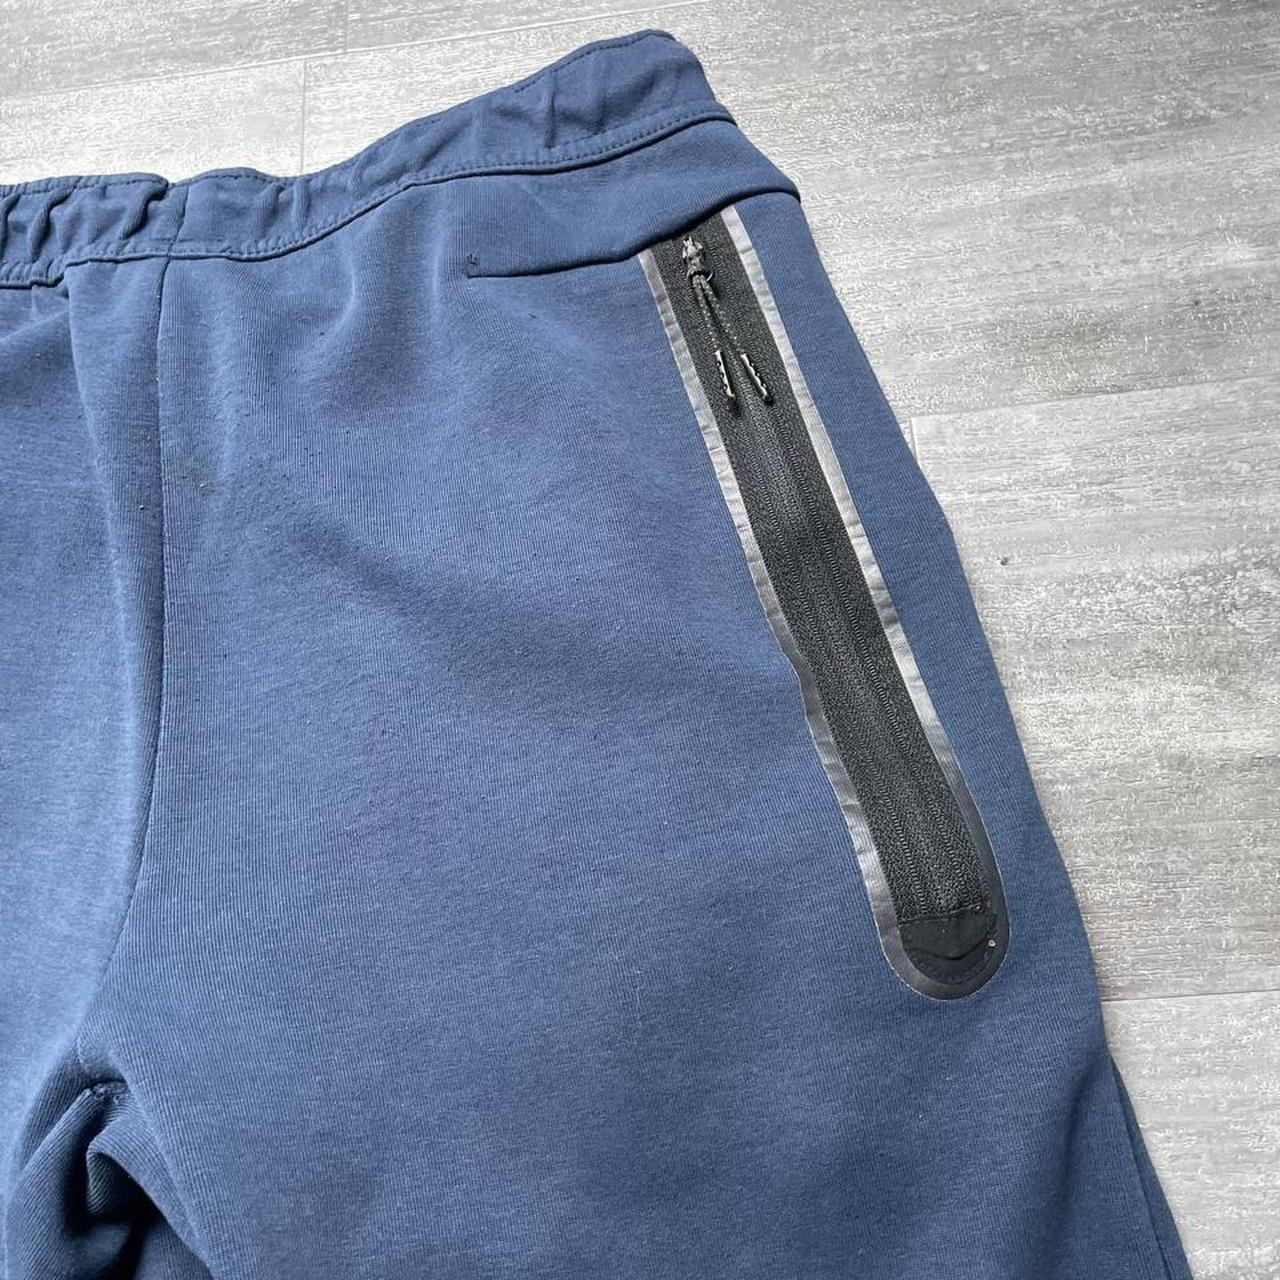 Survêtement Nike Tech Fleece Bleu Marine ️ Taille... - Depop